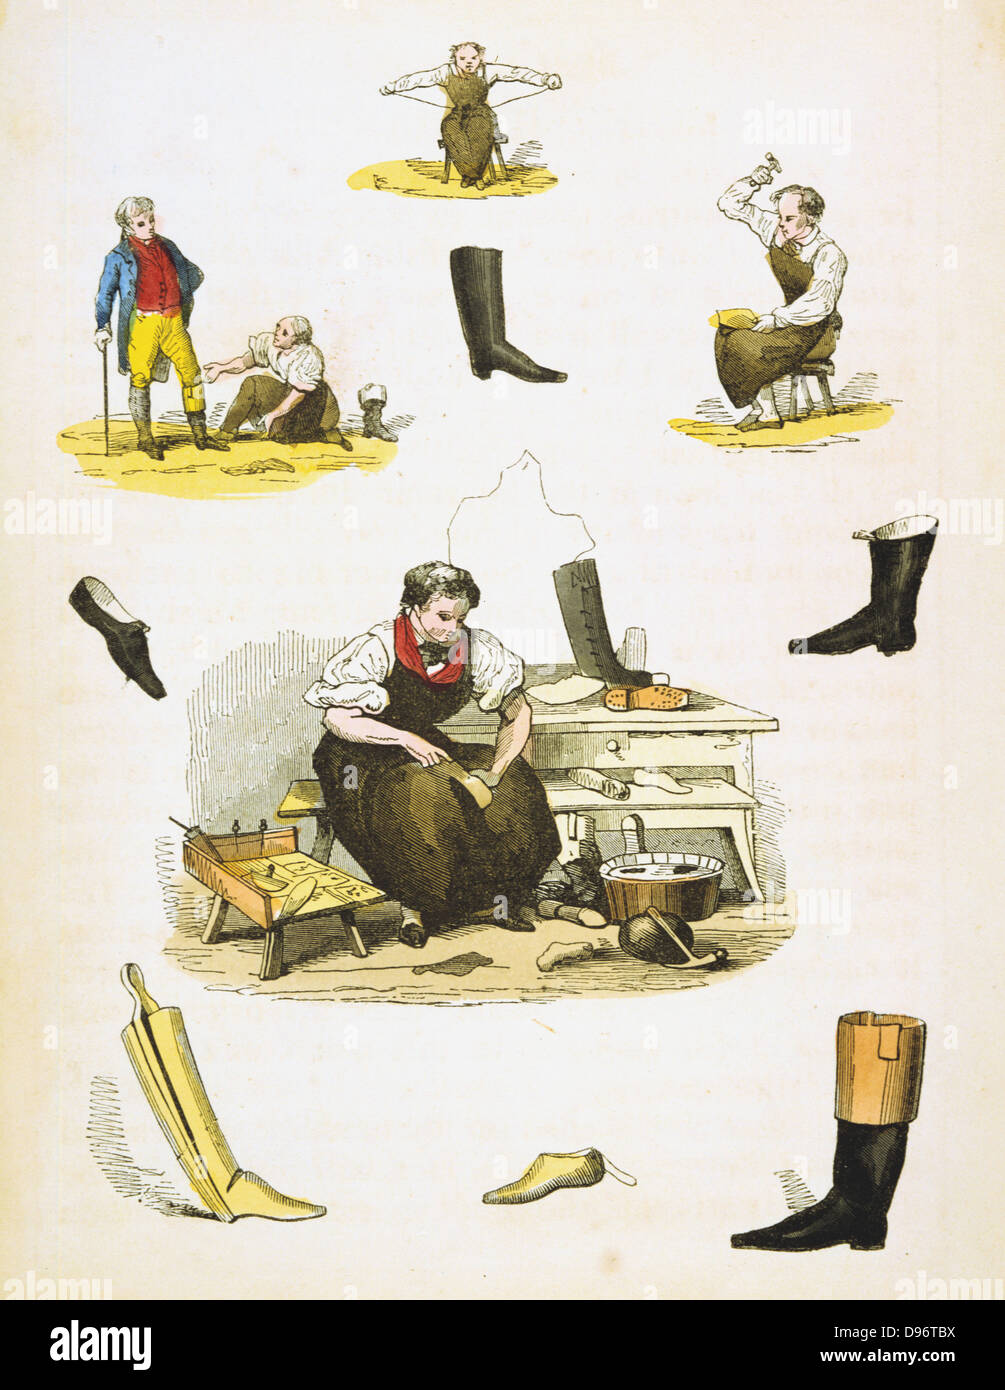 Calzolaio e calzaturiero. Da Ruben passeggiate " del bambino tesoro di conoscenza e divertimento", Londra, c1845. Foto Stock